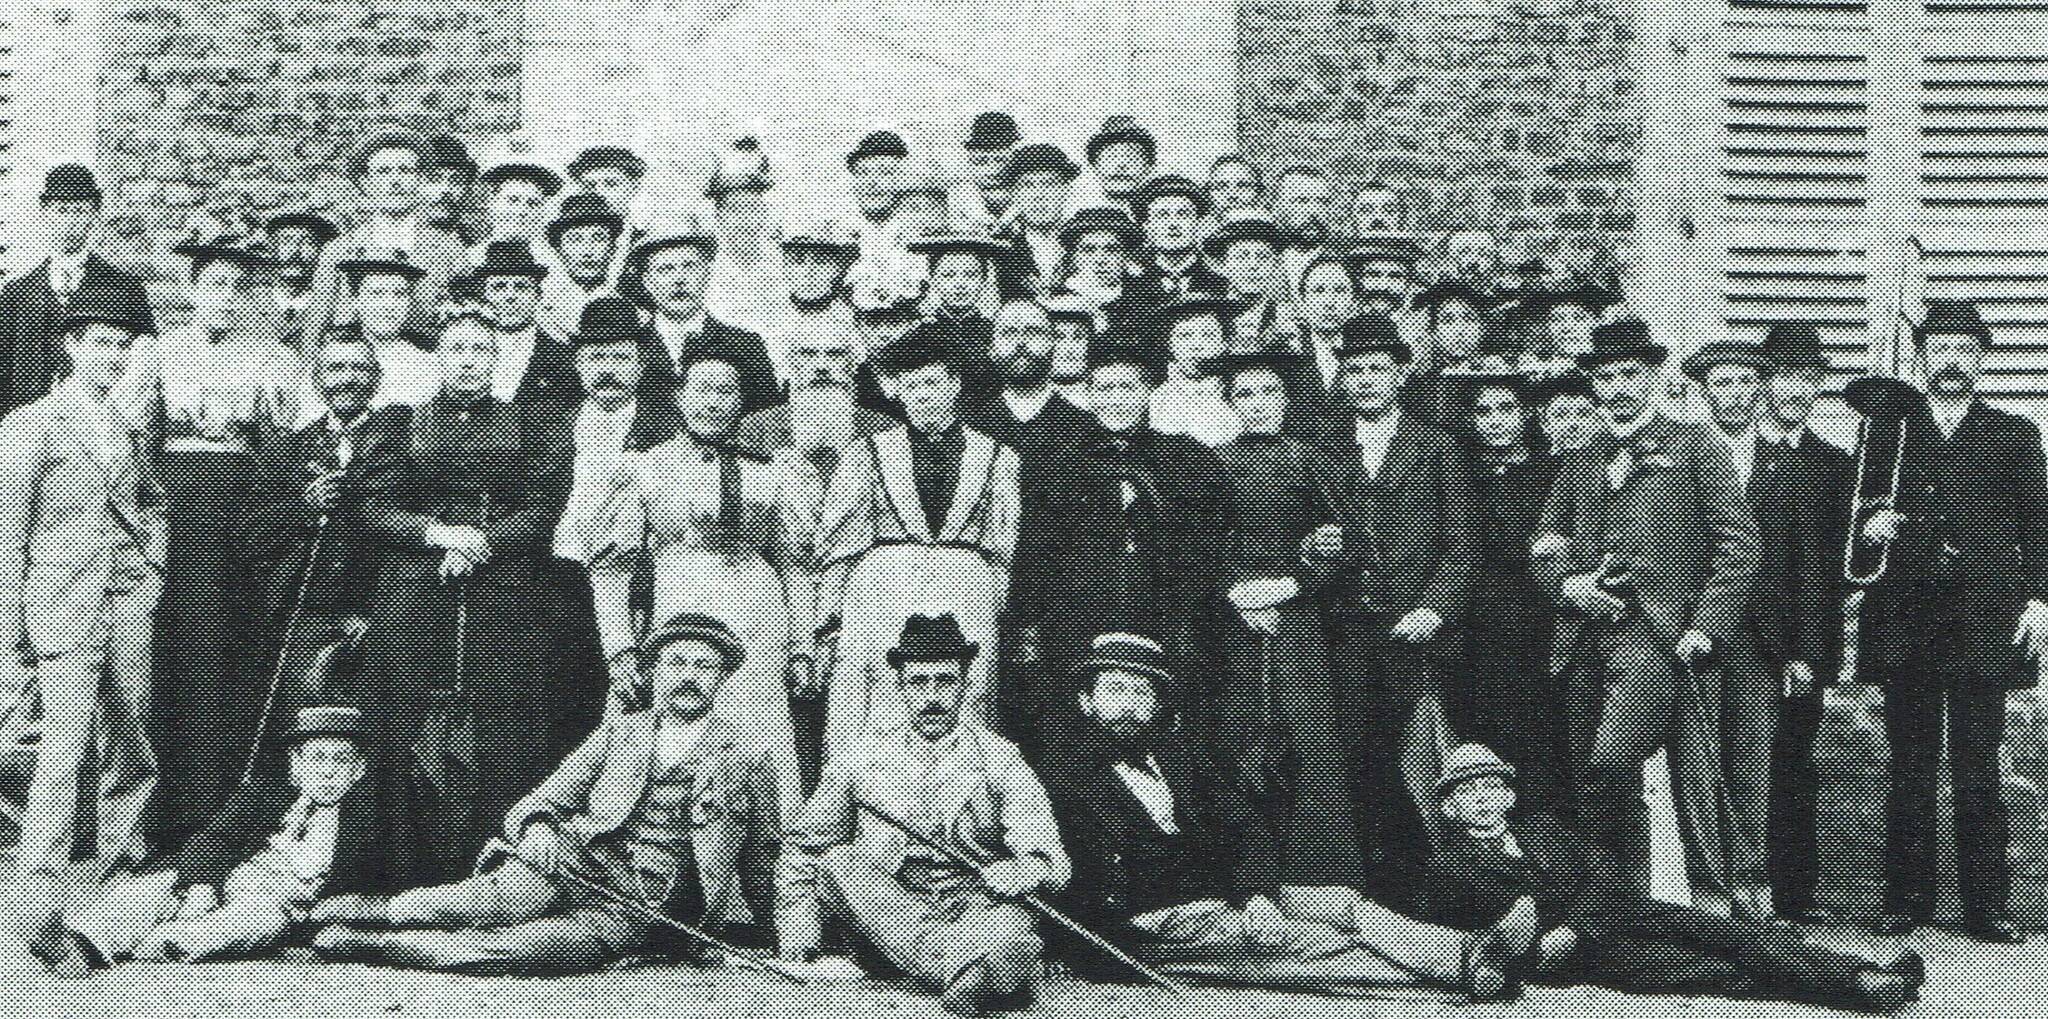  Ein Chorfoto aus dem Jahre 1896, das unter Beweis stellt, dass der Männer-Chor aus der Gartenstadt schon immer für gute Laune und Gemeinschaftssinn stand. 